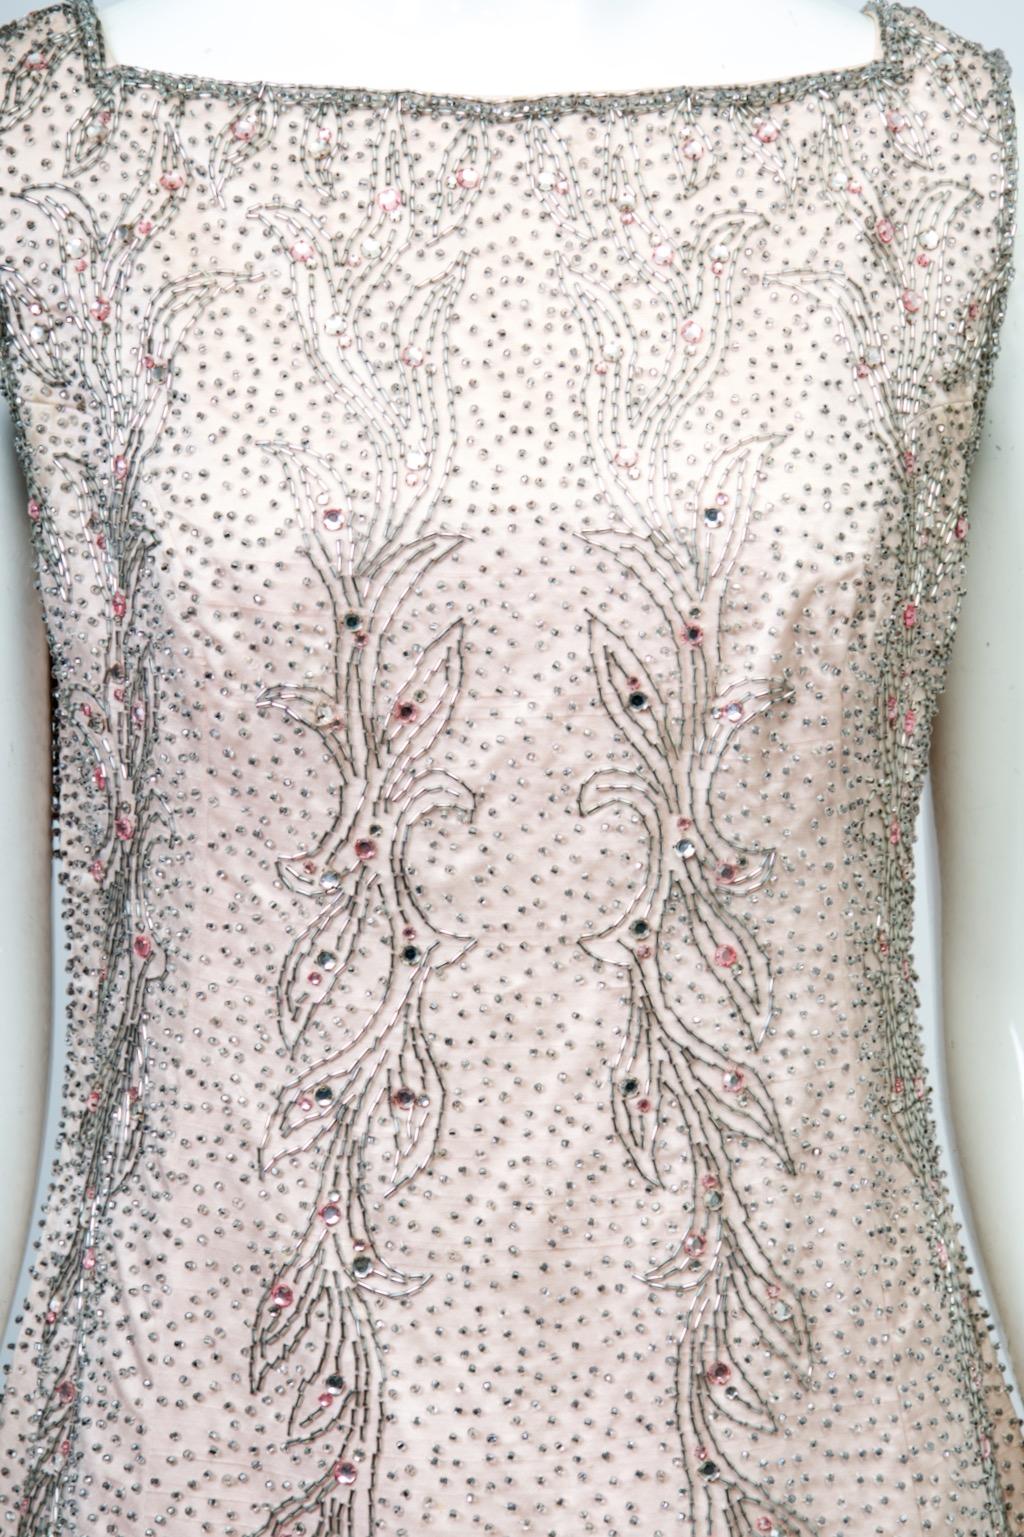 Abendkleid von Malcolm Starr aus den 1960er Jahren aus blassrosa Satin mit Perlenverzierung. Es besteht hauptsächlich aus Silberperlen in verschiedenen Formen und Größen, der Körper ist mit winzigen Saatperlen bedeckt, während vom Hals bis zur Mitte